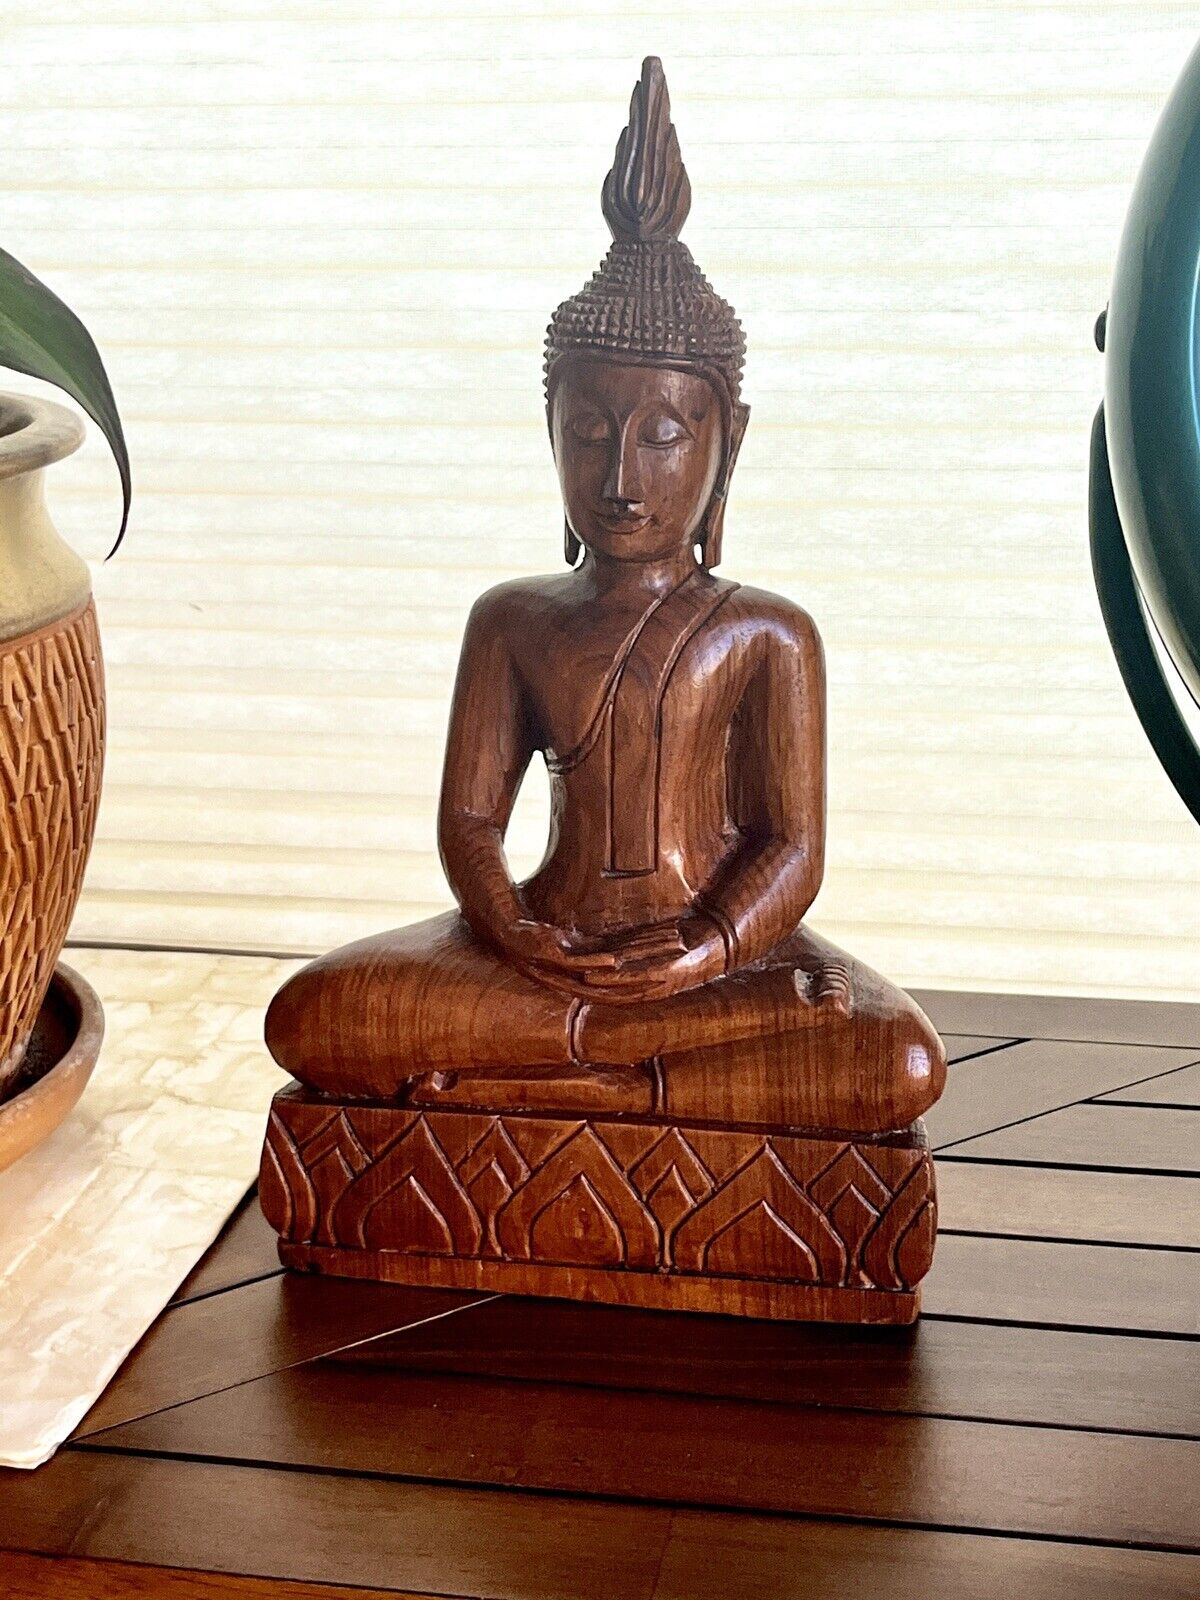 Vintage Seated Meditating Buddha Statue Hand Carved Wood Figure 14”